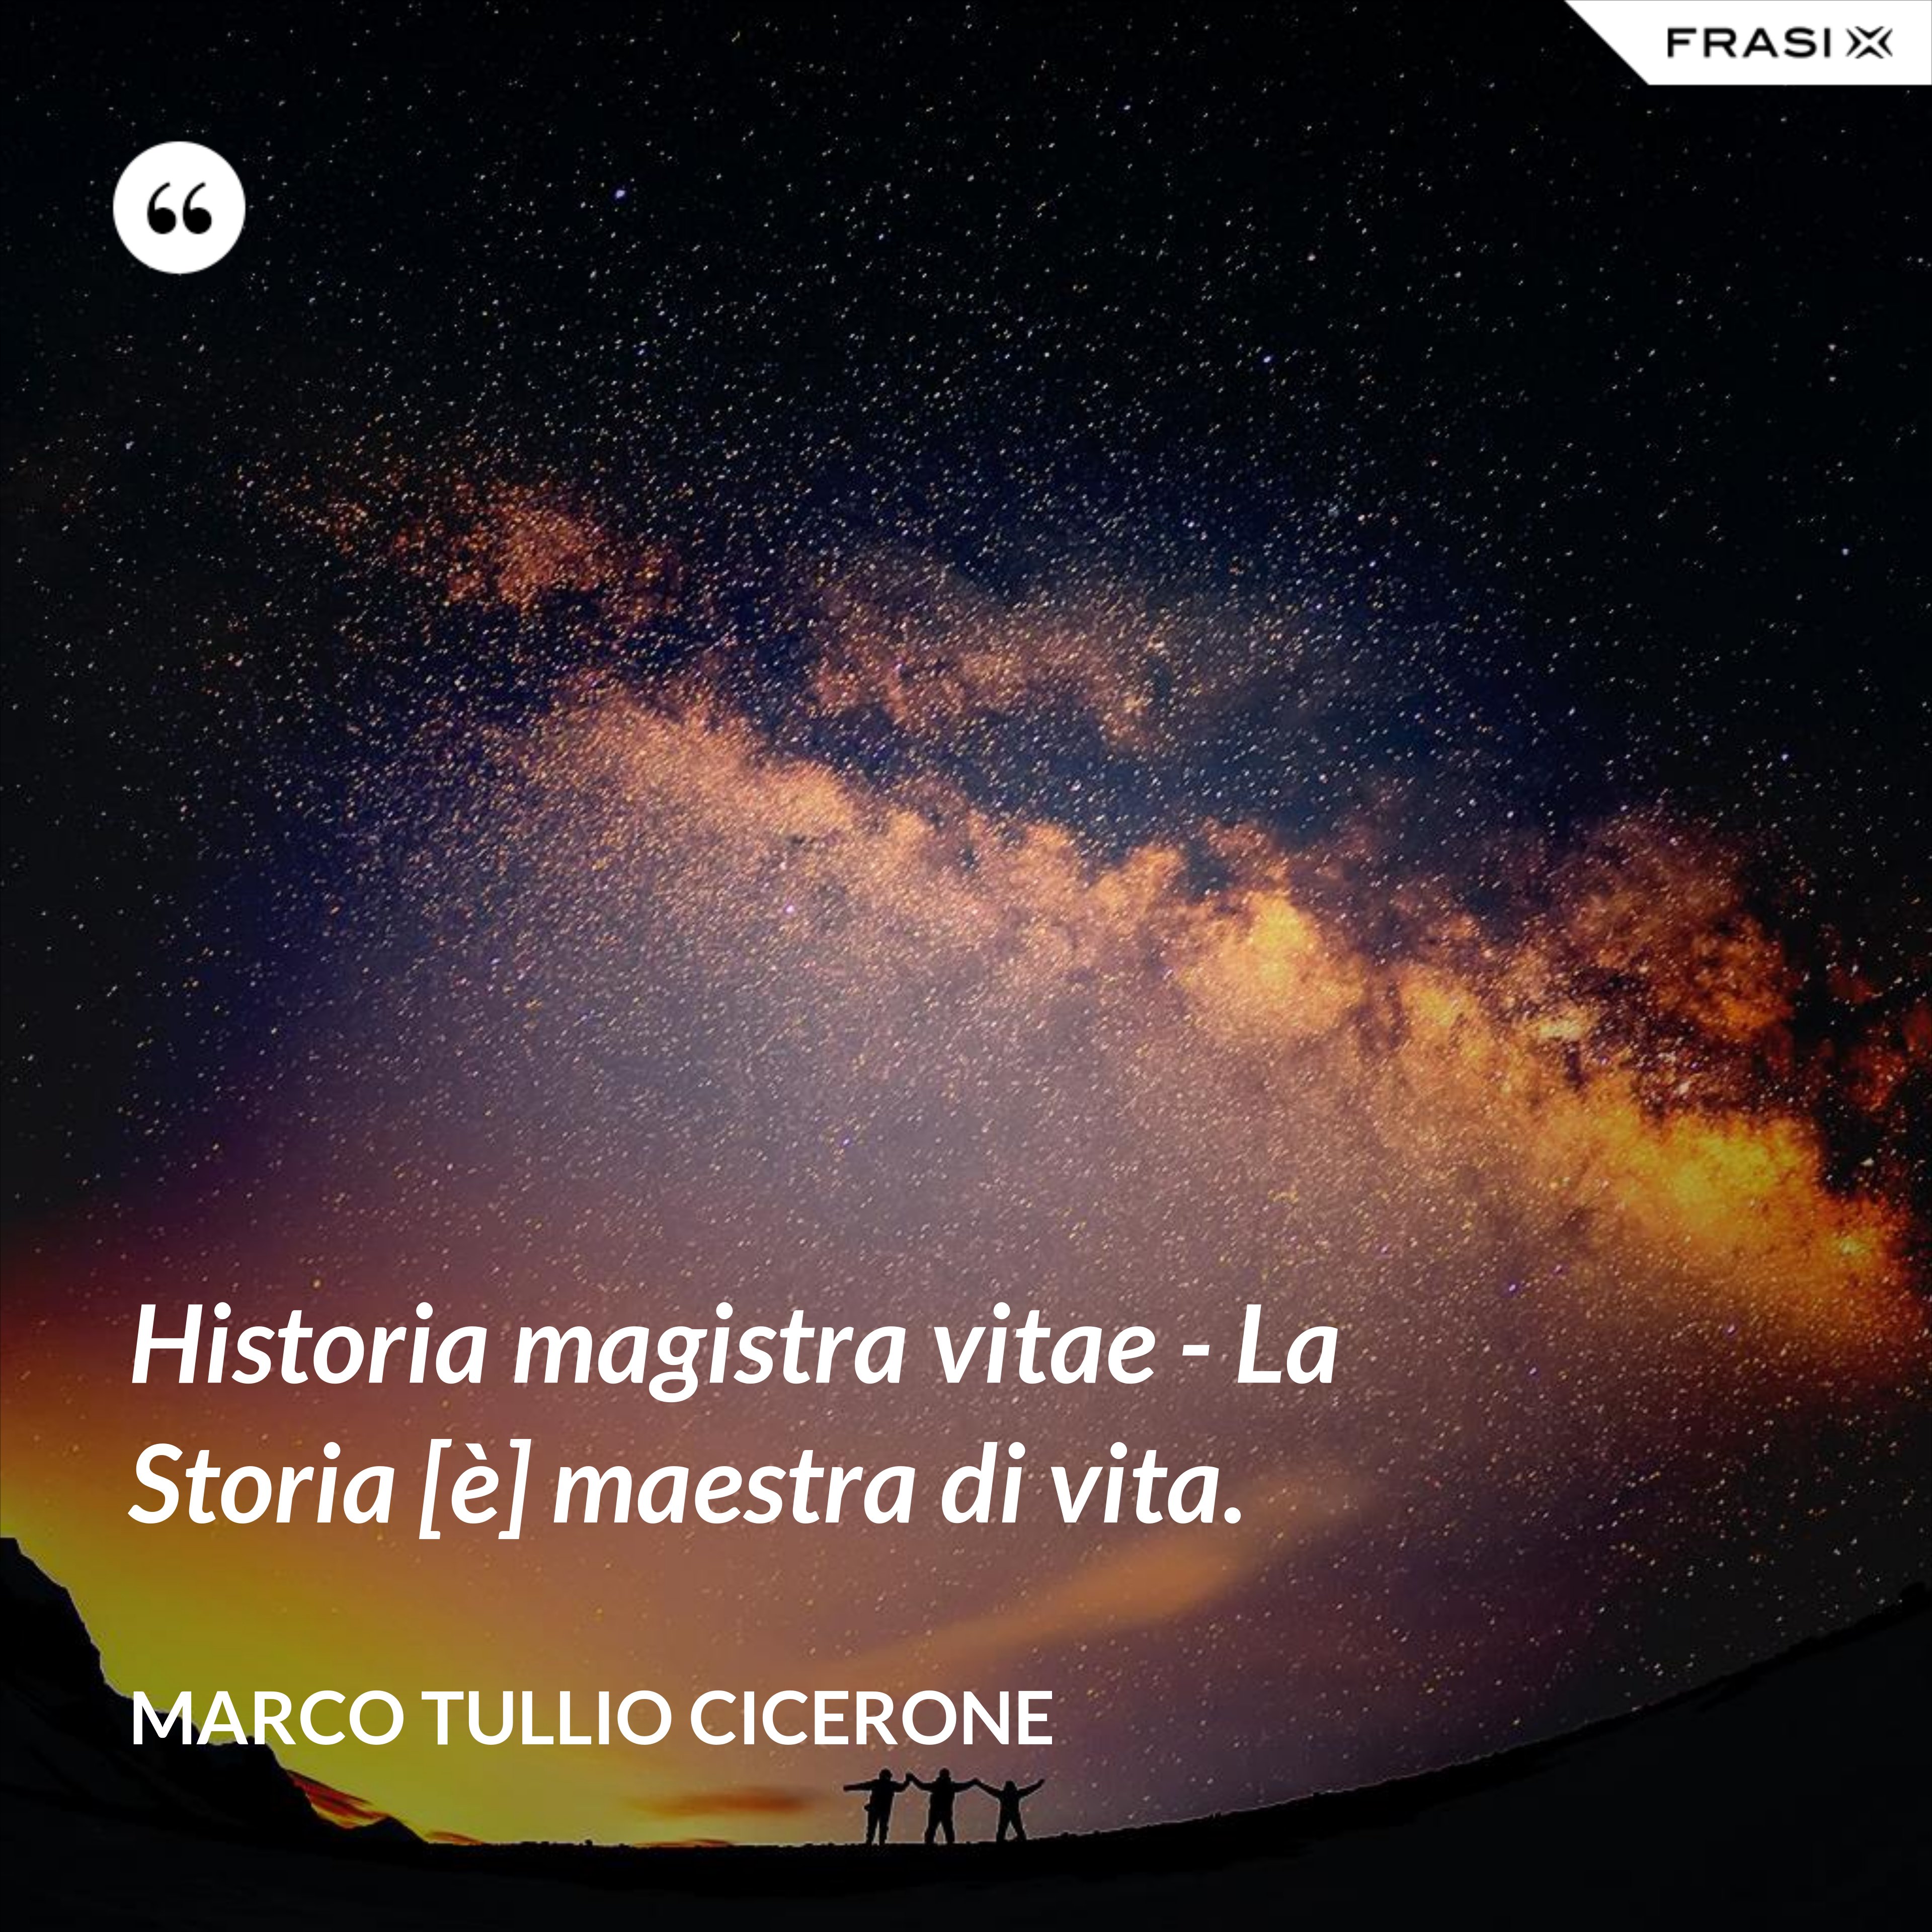 Historia magistra vitae - La Storia [è] maestra di vita. - Marco Tullio Cicerone